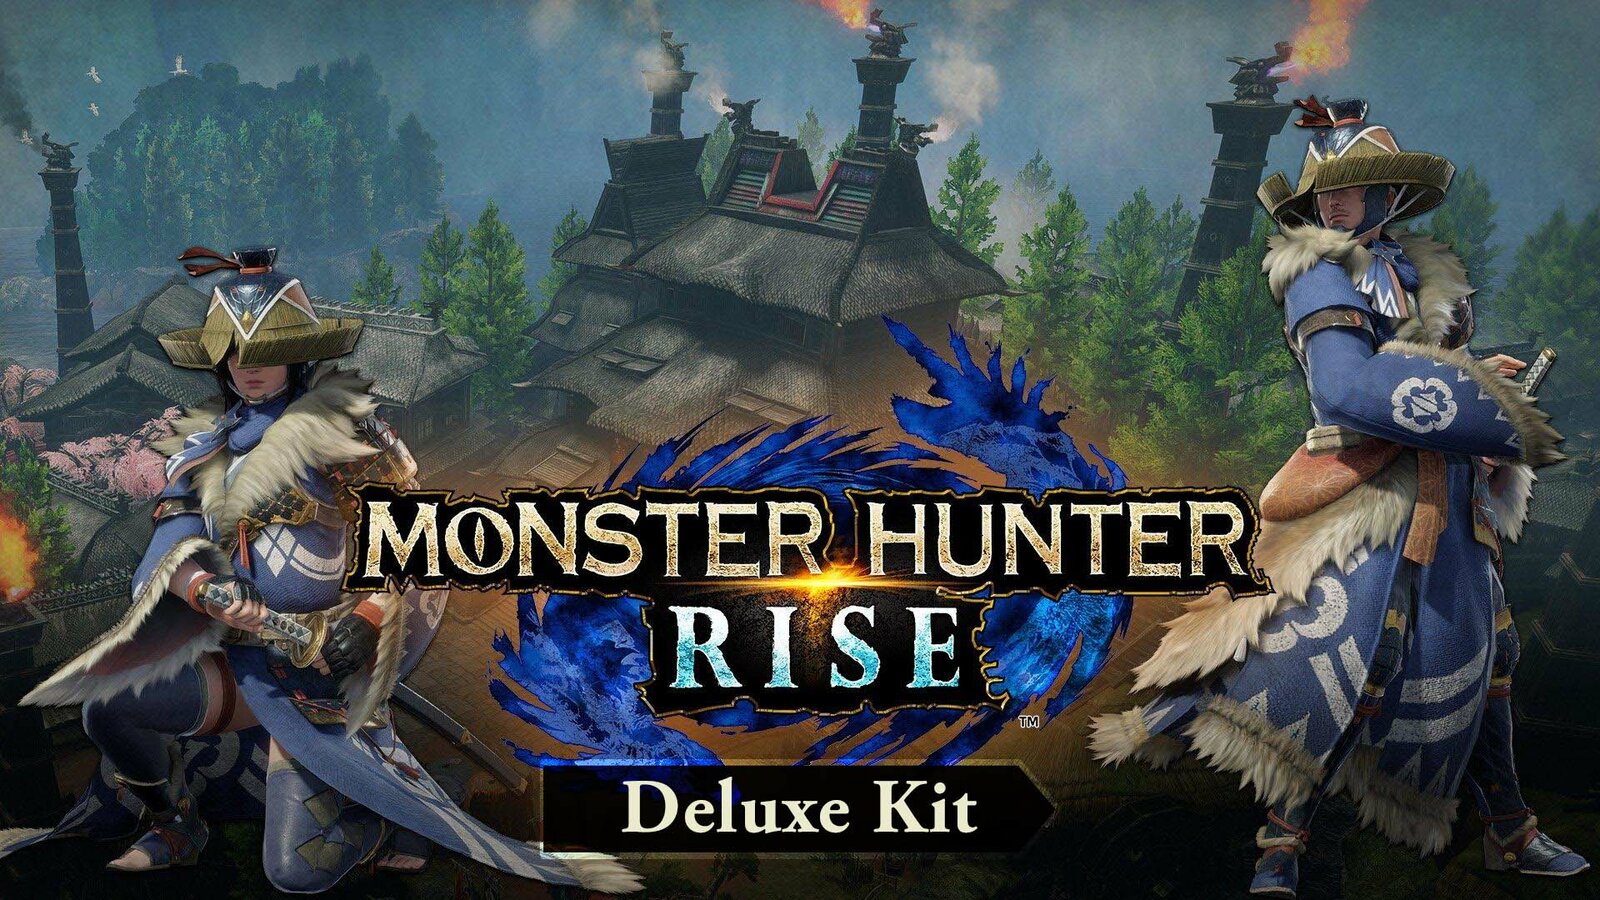 Monster Hunter: Rise Deluxe Kit